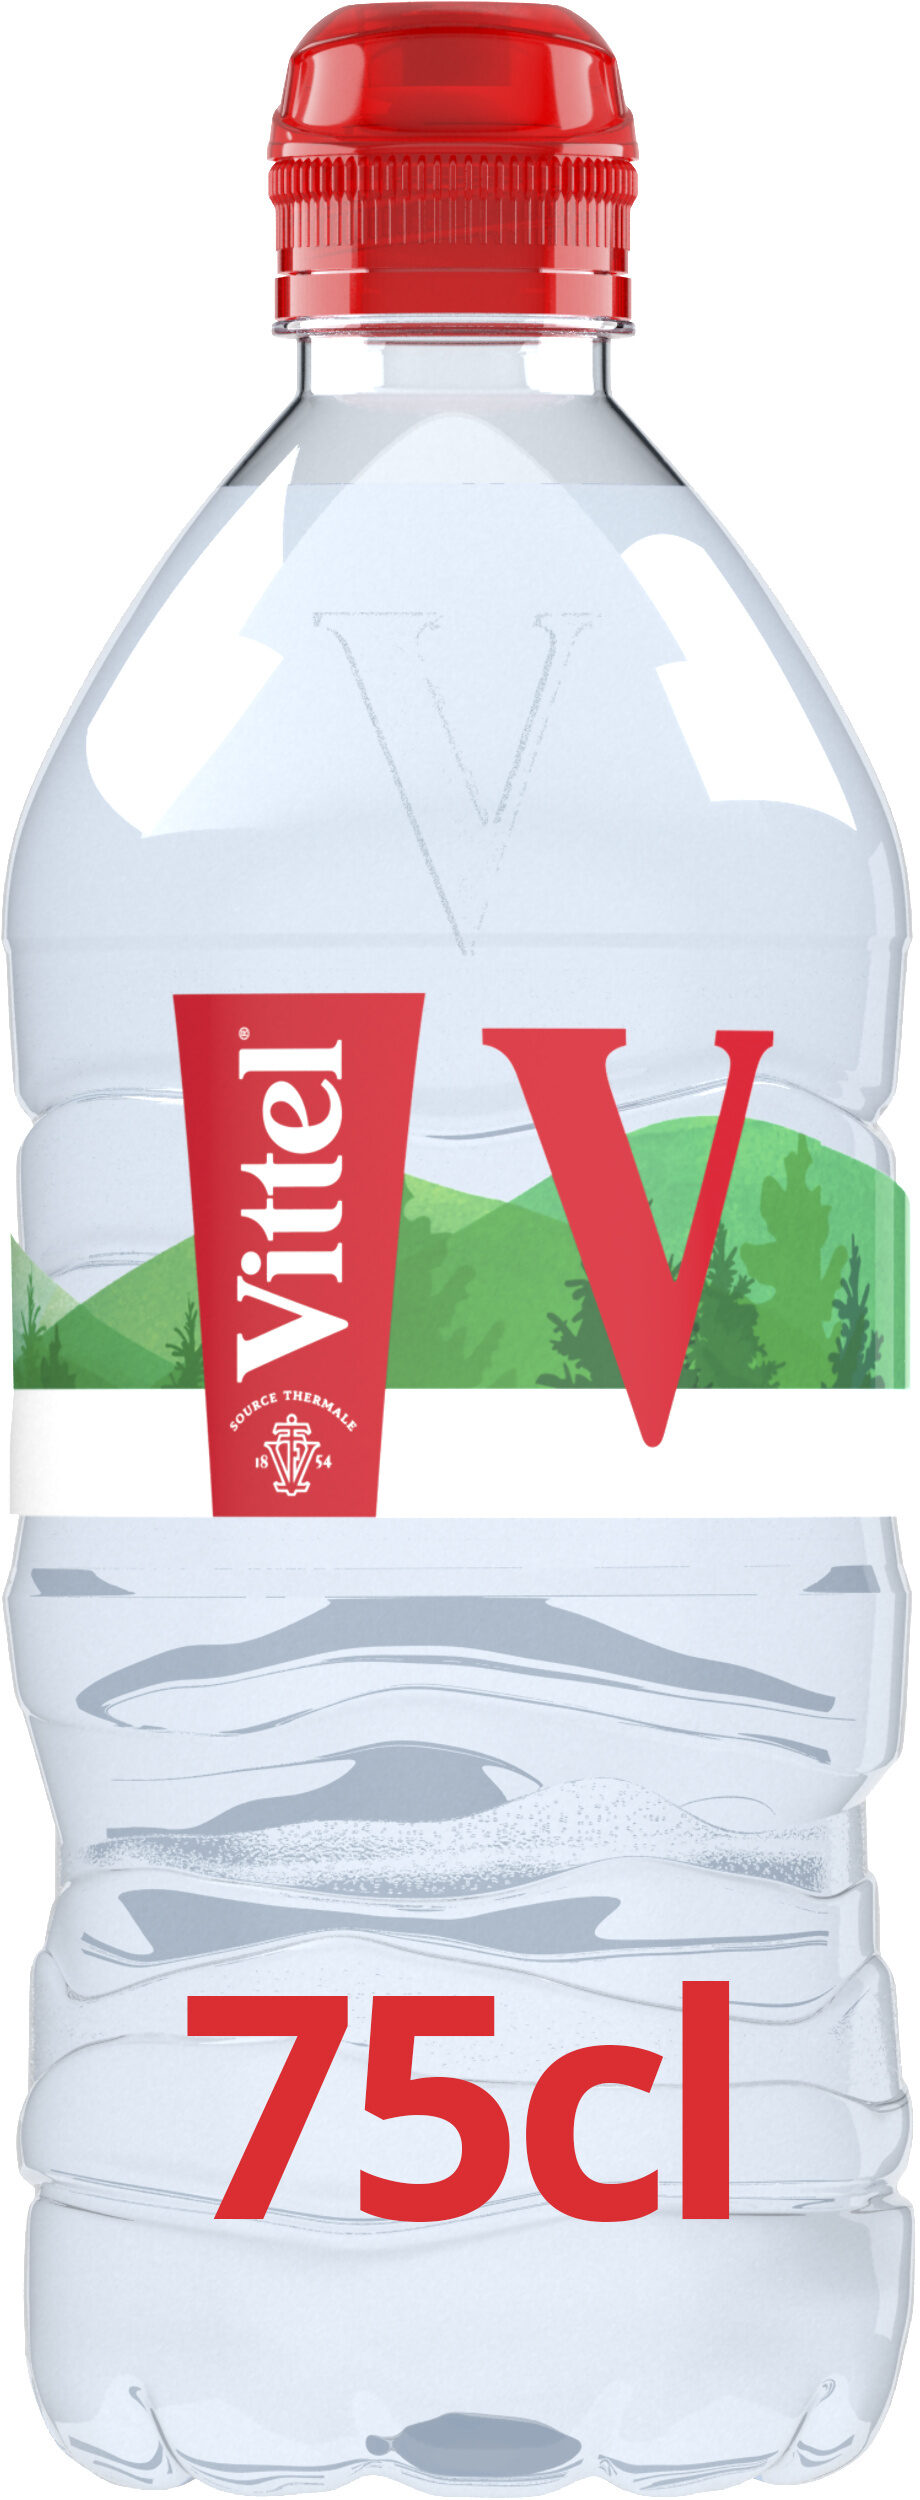 VITTEL eau minérale naturelle 75cl - Produit